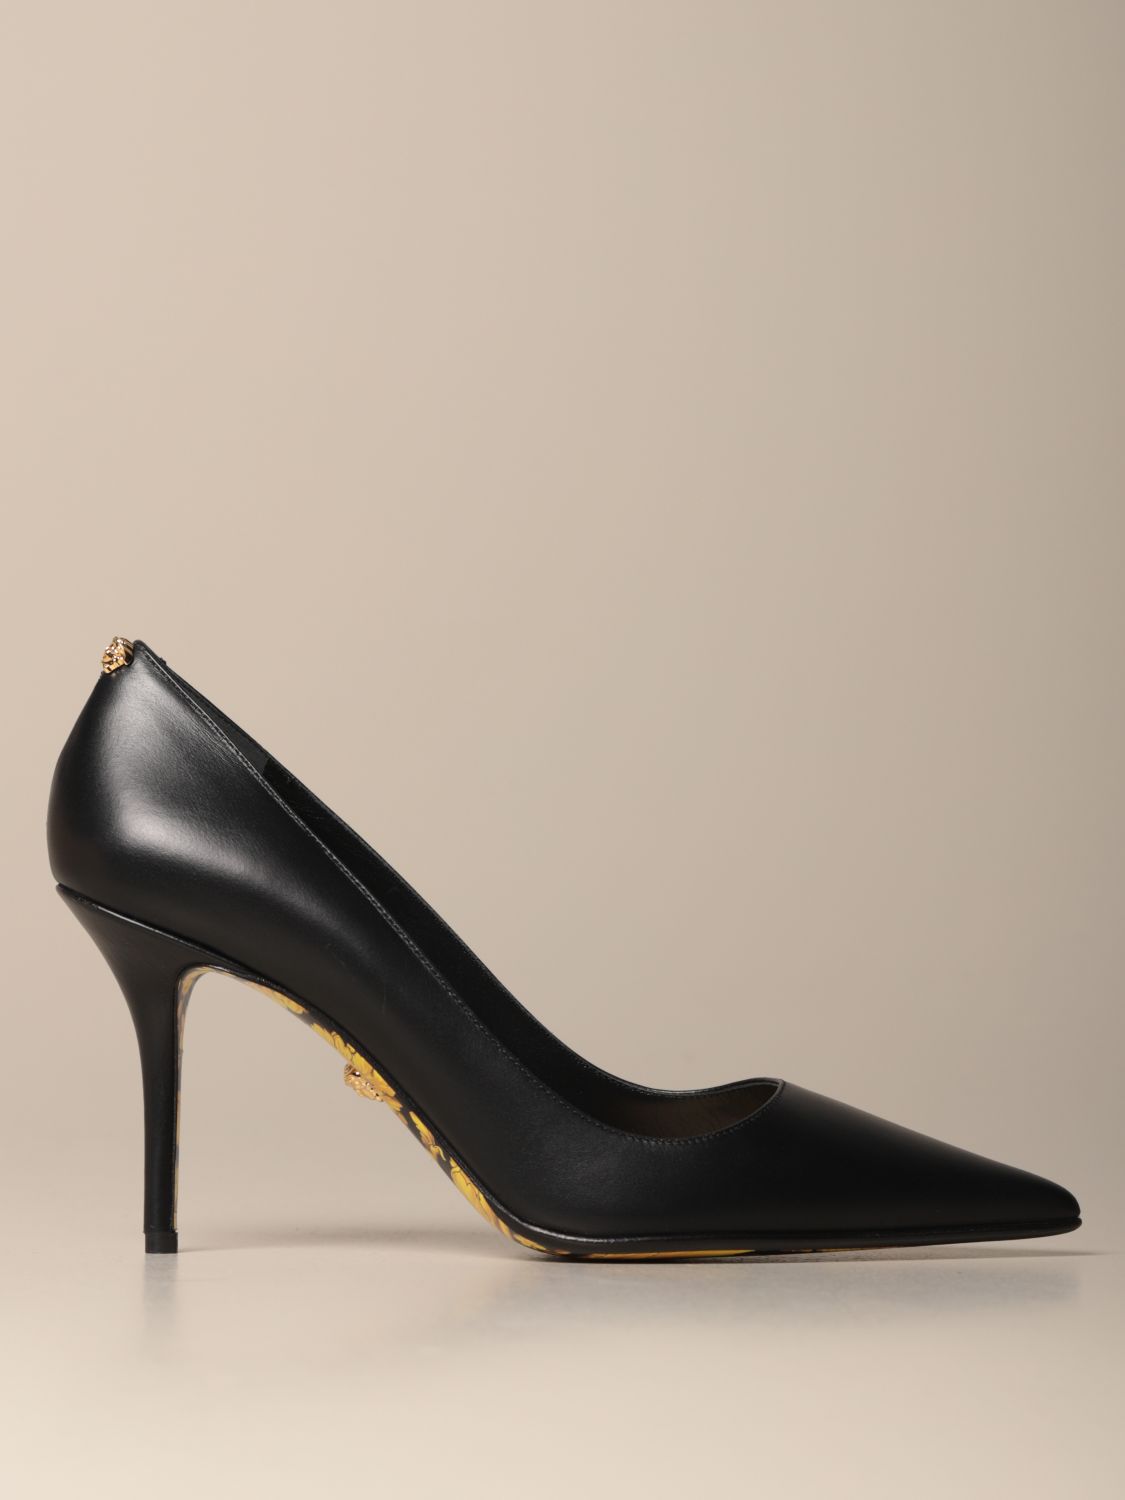 versace heel shoes